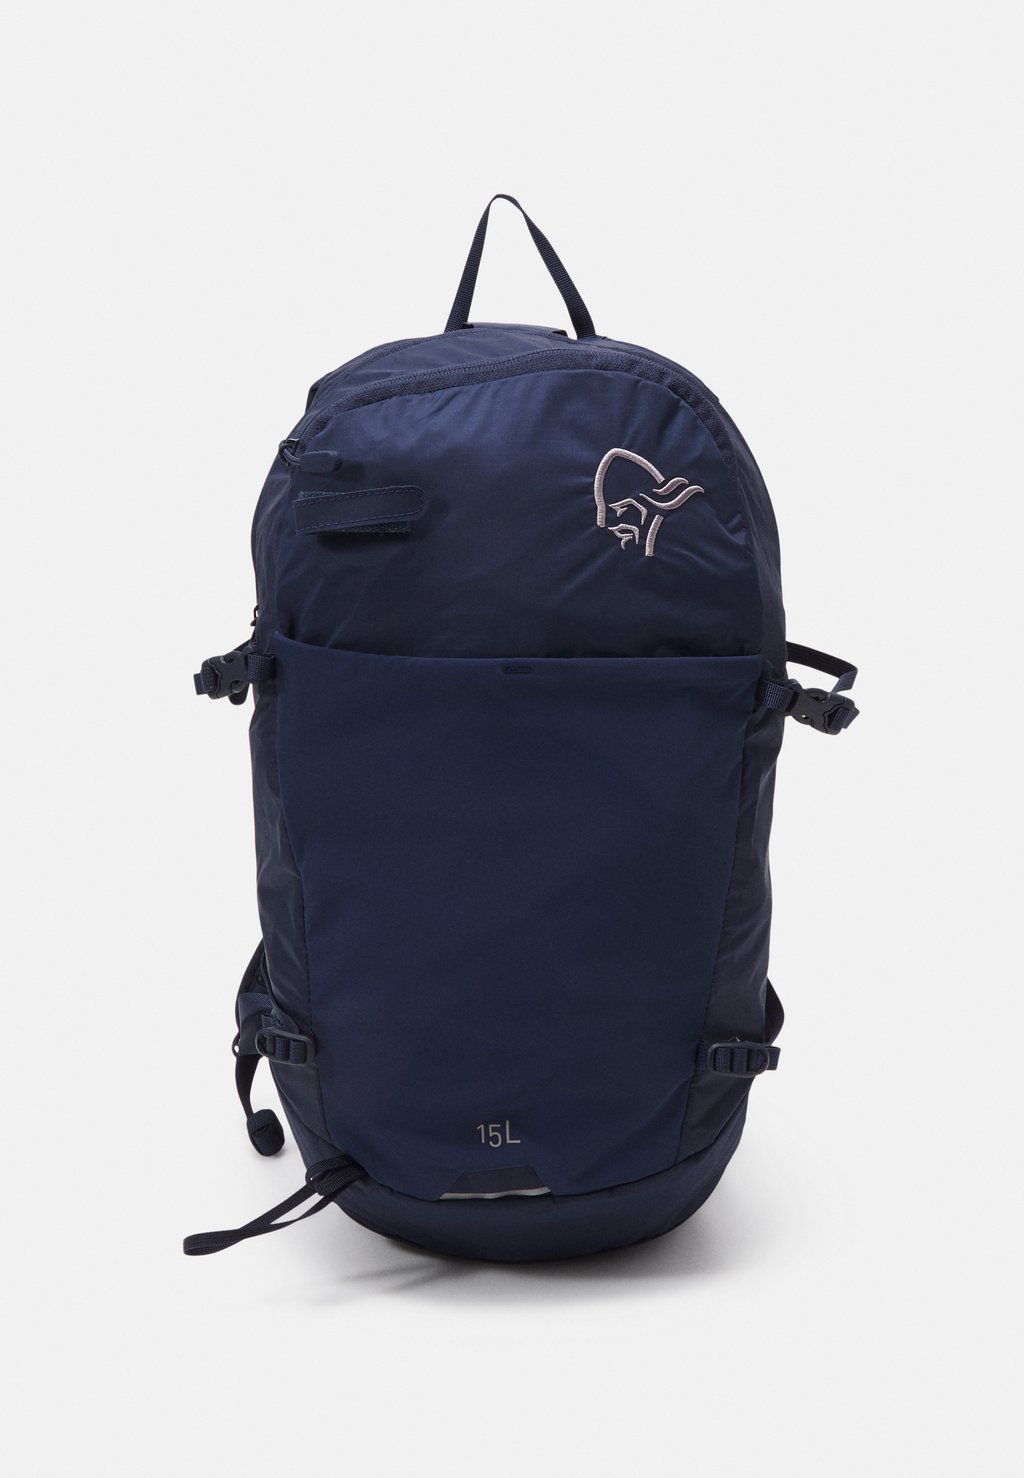 Рюкзак для путешествий Norrona Unisex, темно-синий рюкзак для путешествий head net vertical темно синий